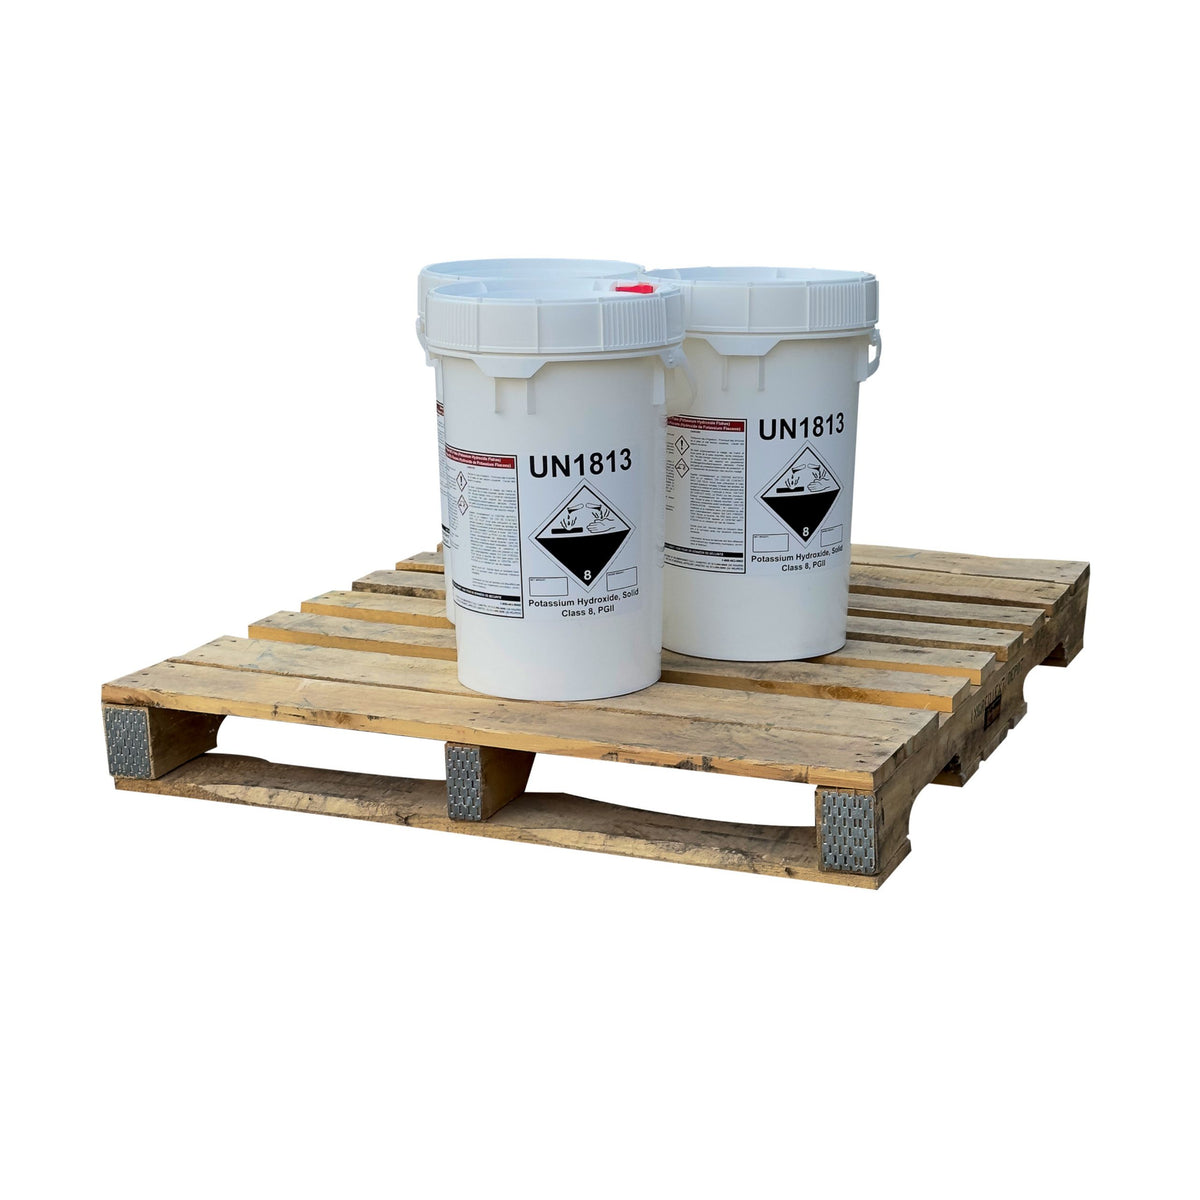 Potassium Hydroxide (Caustic Potash or KOH) Flakes - 150 lbs 3 Pails on a Pallet